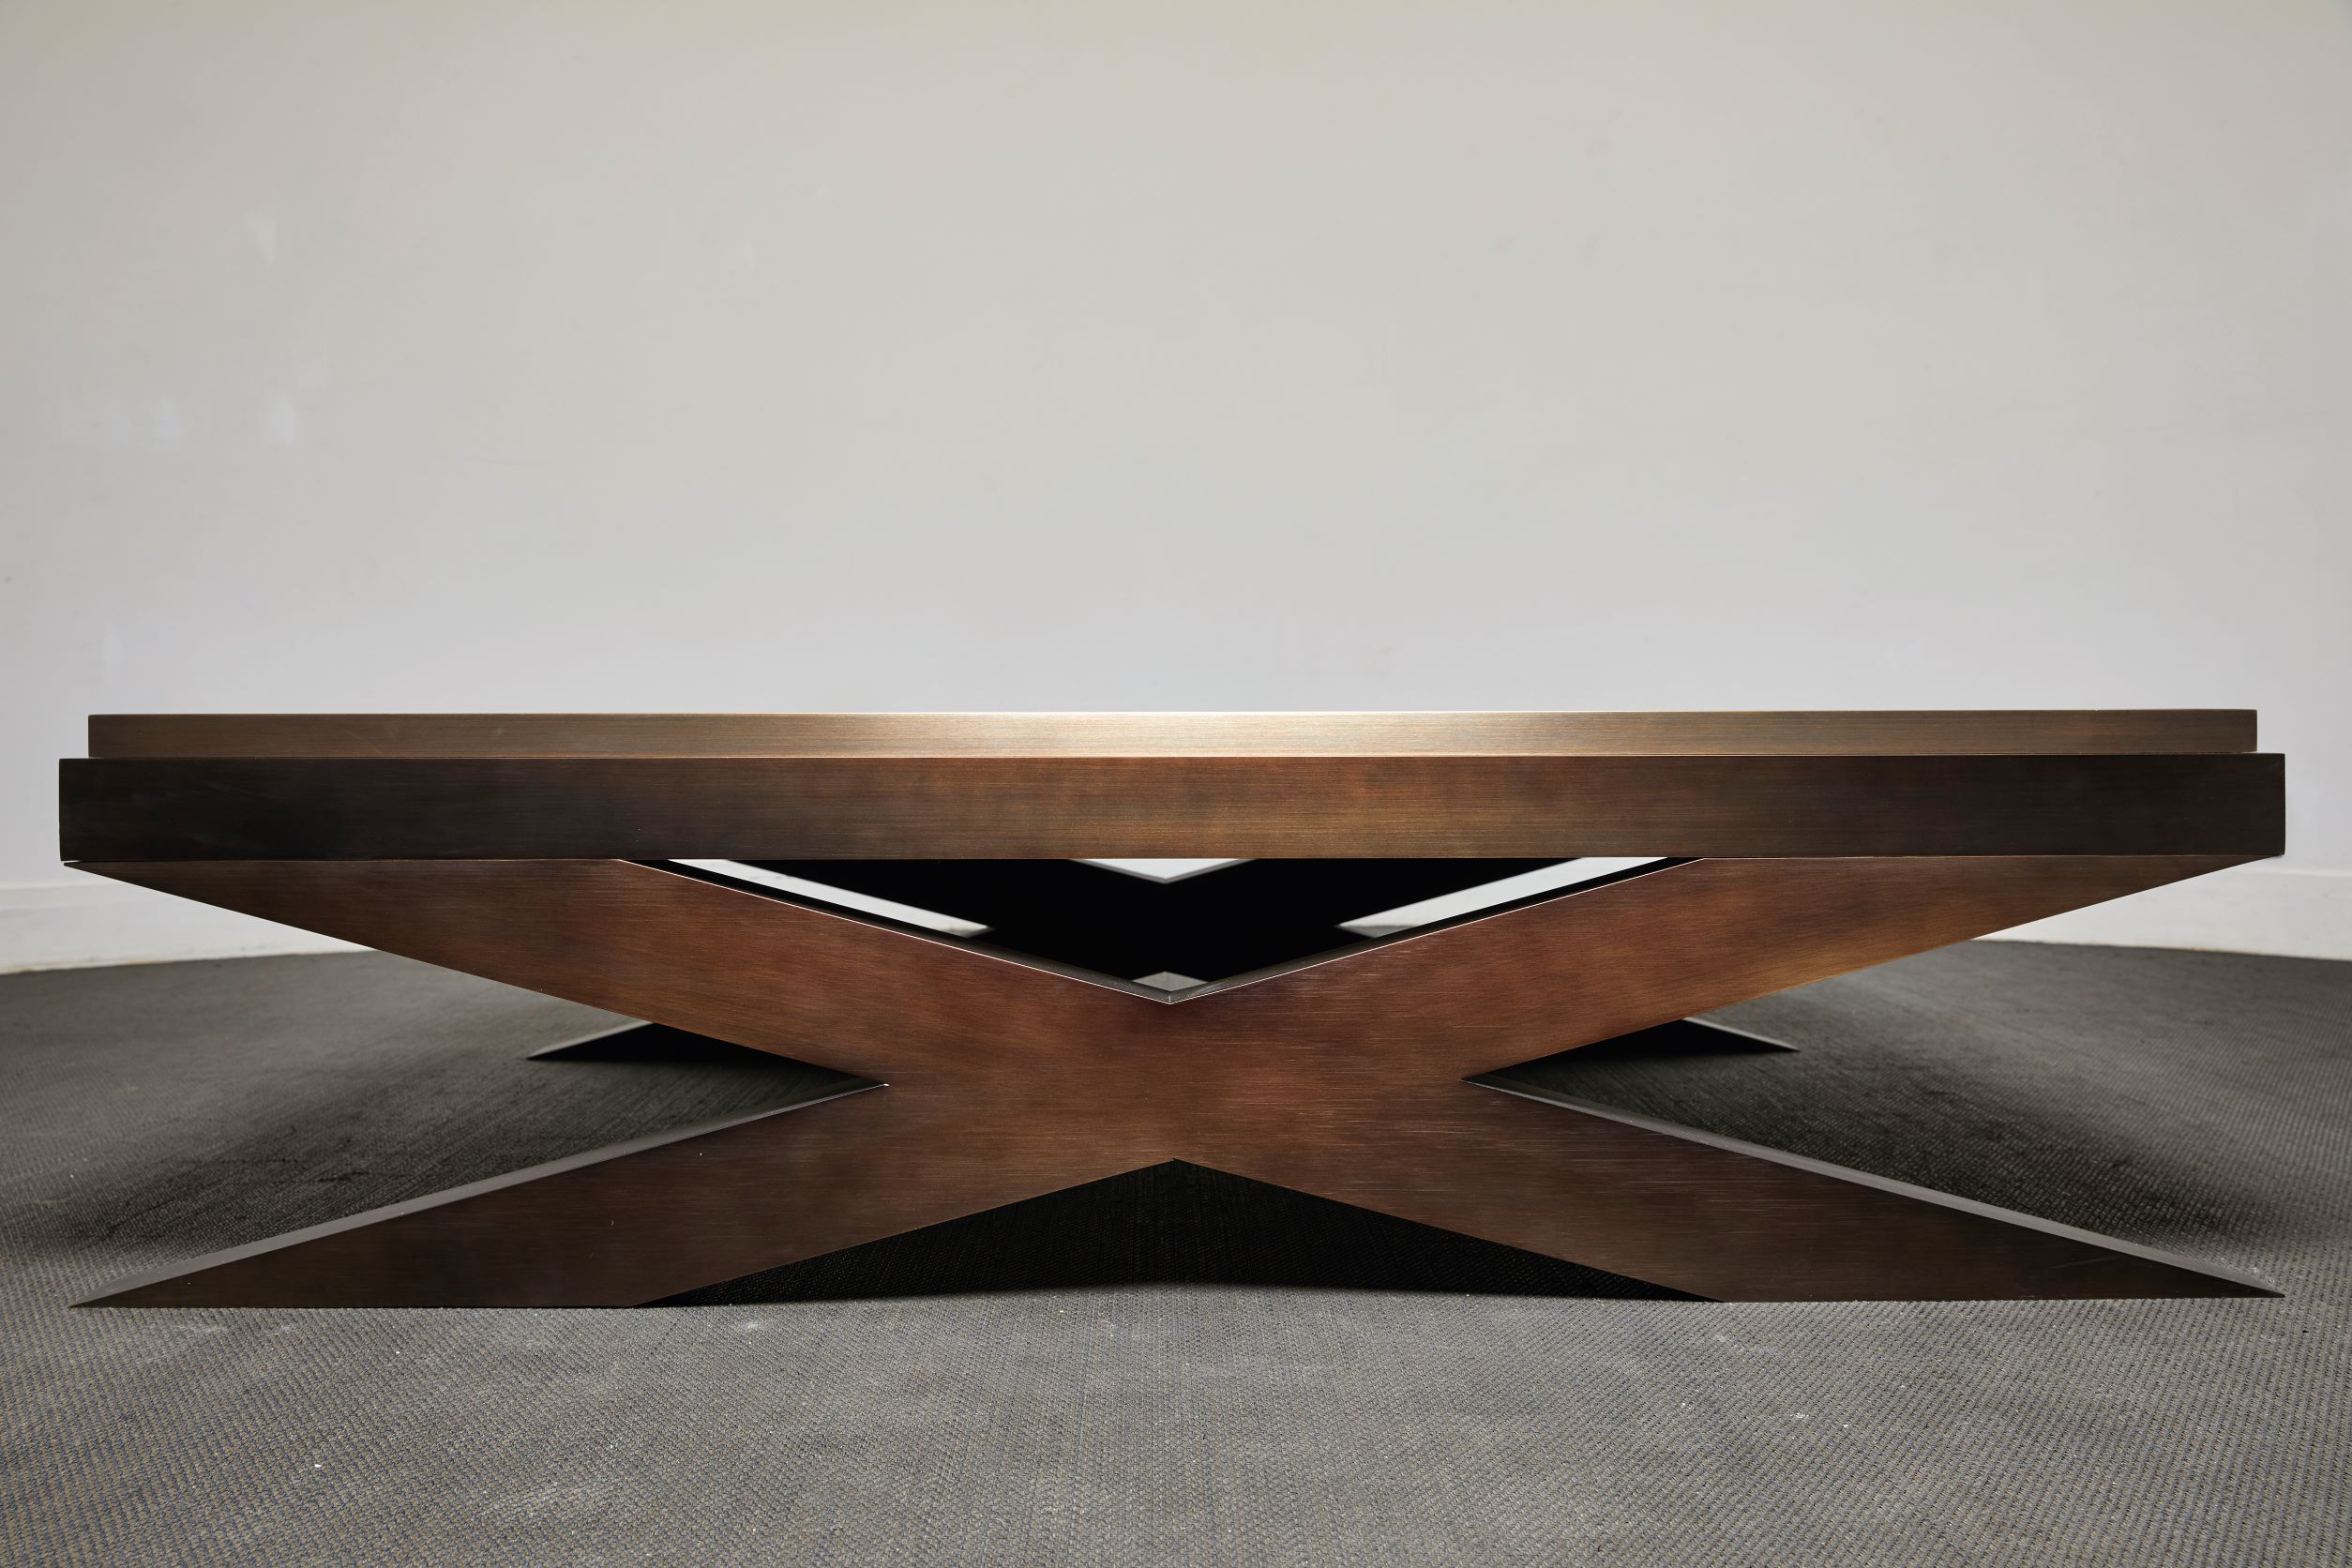 以 22 克拉金箔打造桌面的 ORO 桌，來自 Amalou 與工藝師的合作，如今是不少設計博物館爭相收藏的作品。